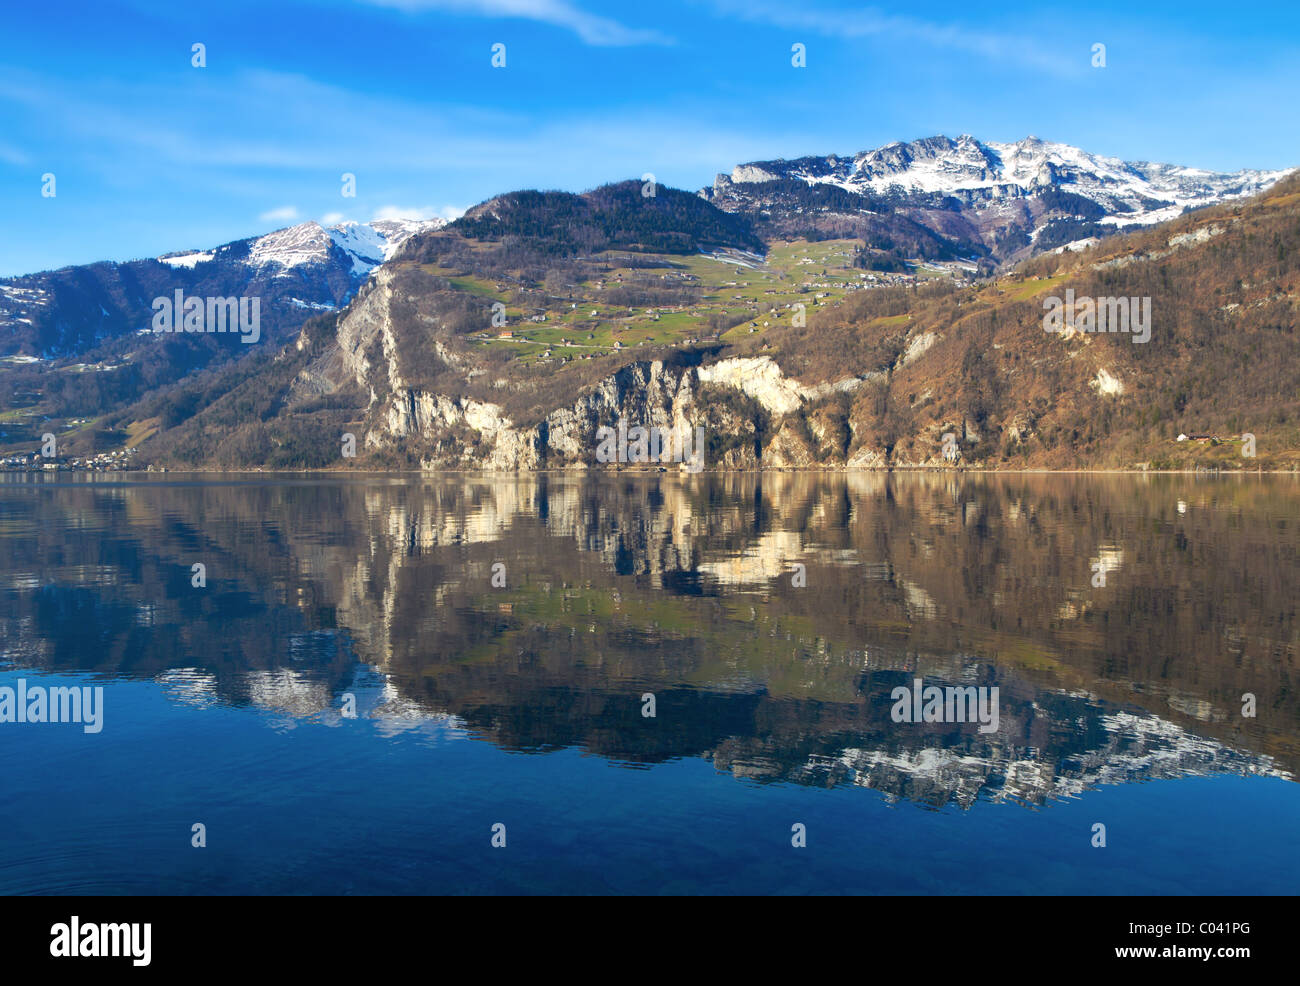 Schweiz - Walensee See nr St. Gallen. Aufgenommen mit Canon 7D und Sigma 17-50mm F2. 8 Objektiv Stockfoto